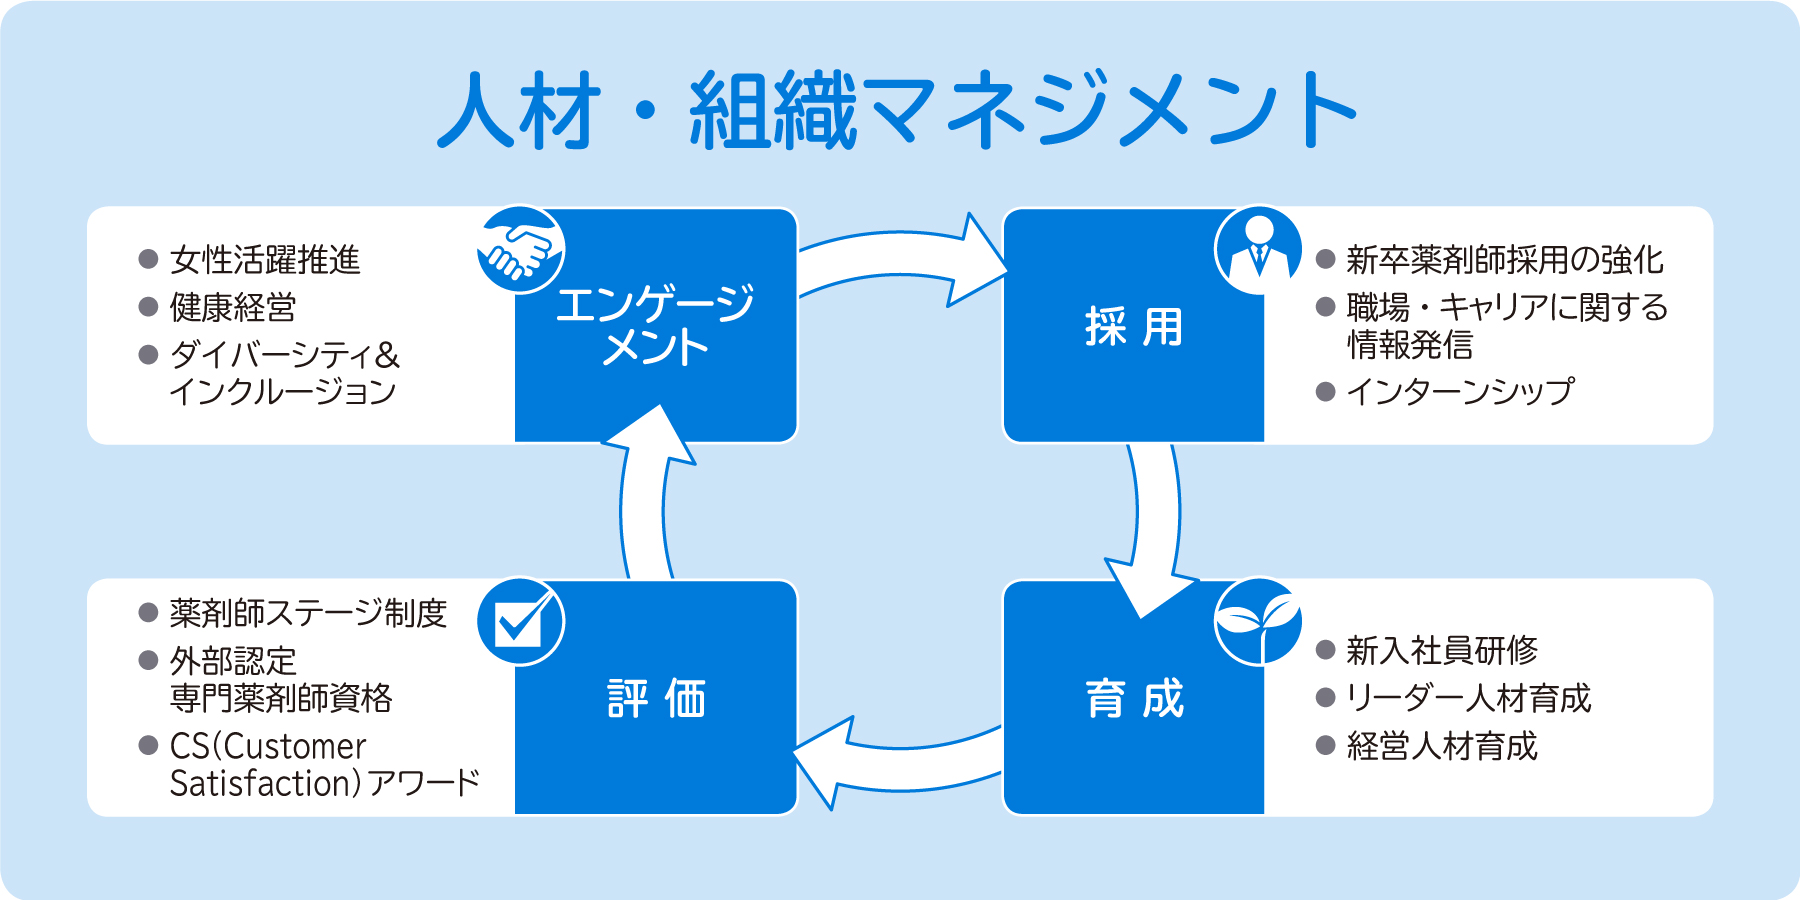 日本調剤の人材・組織マネジメント概念図